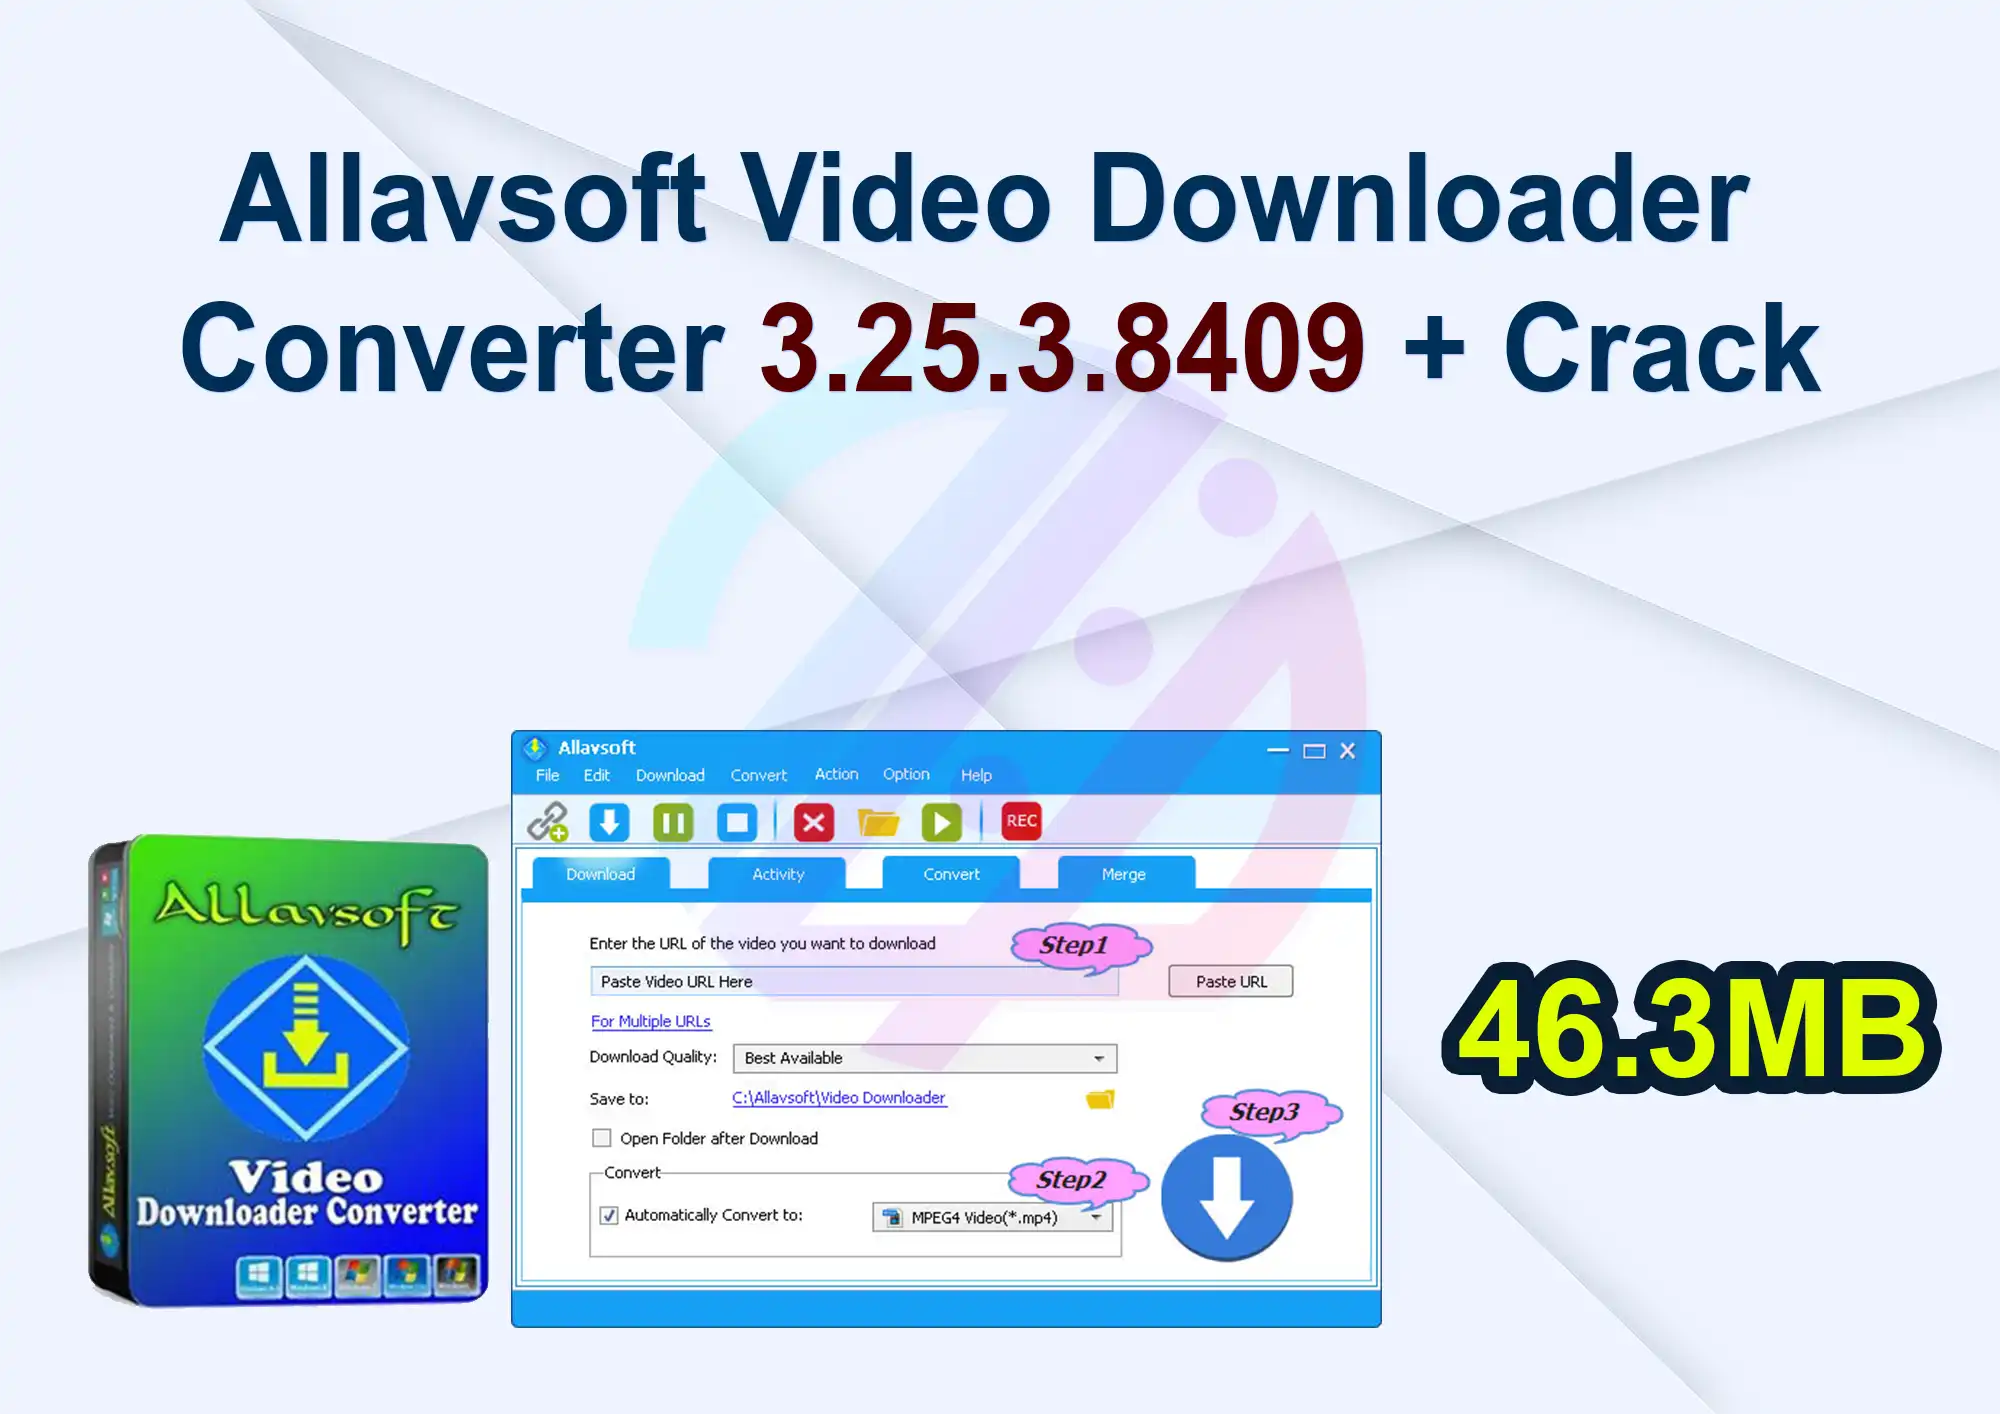 Allavsoft Video Downloader Converter 3.25.3.8409 + Crack